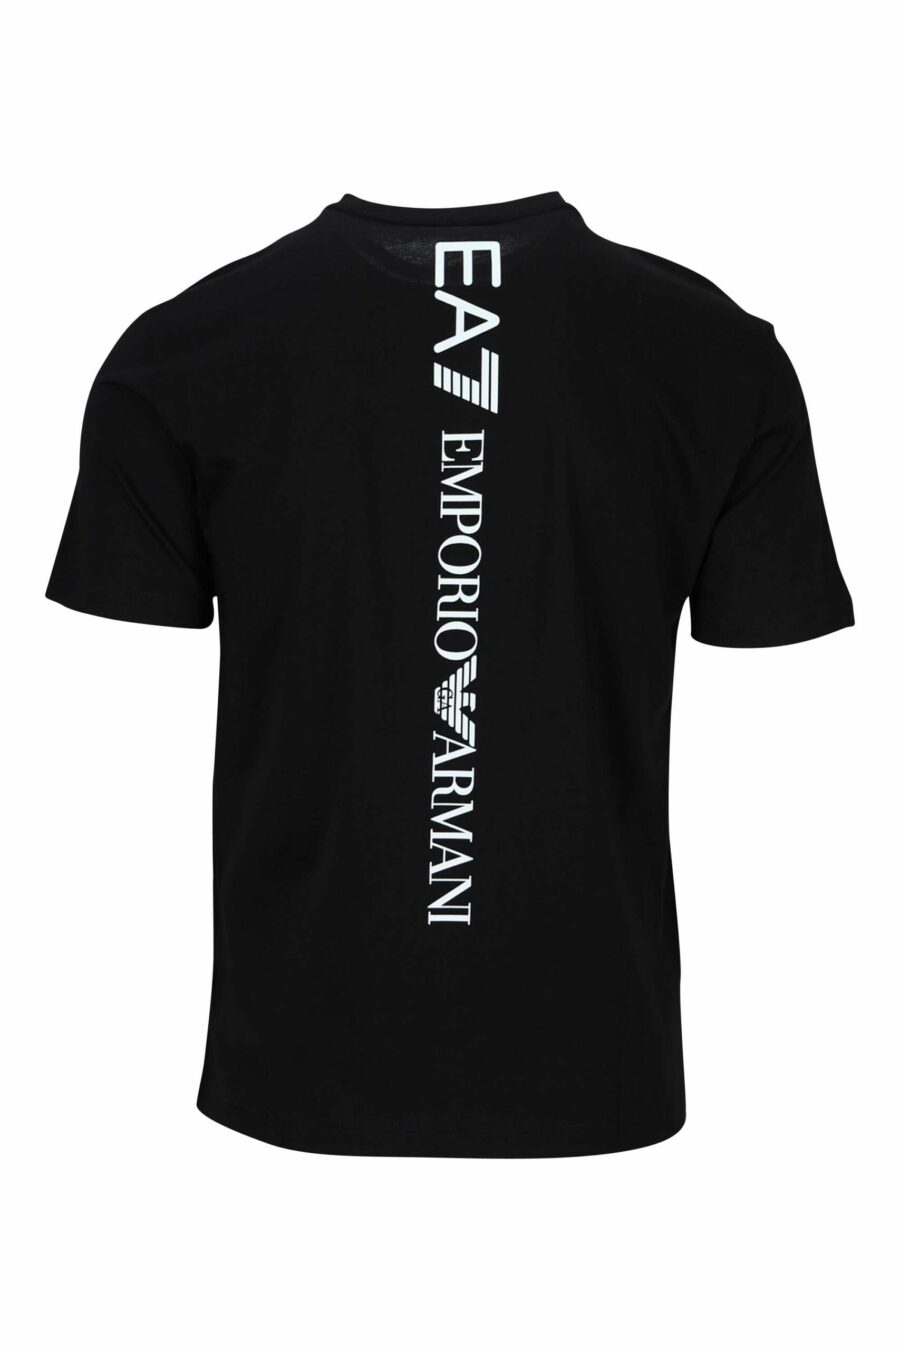 T-shirt preta com maxilogo vertical "lux identity" nas costas - 8058947452668 1 à escala